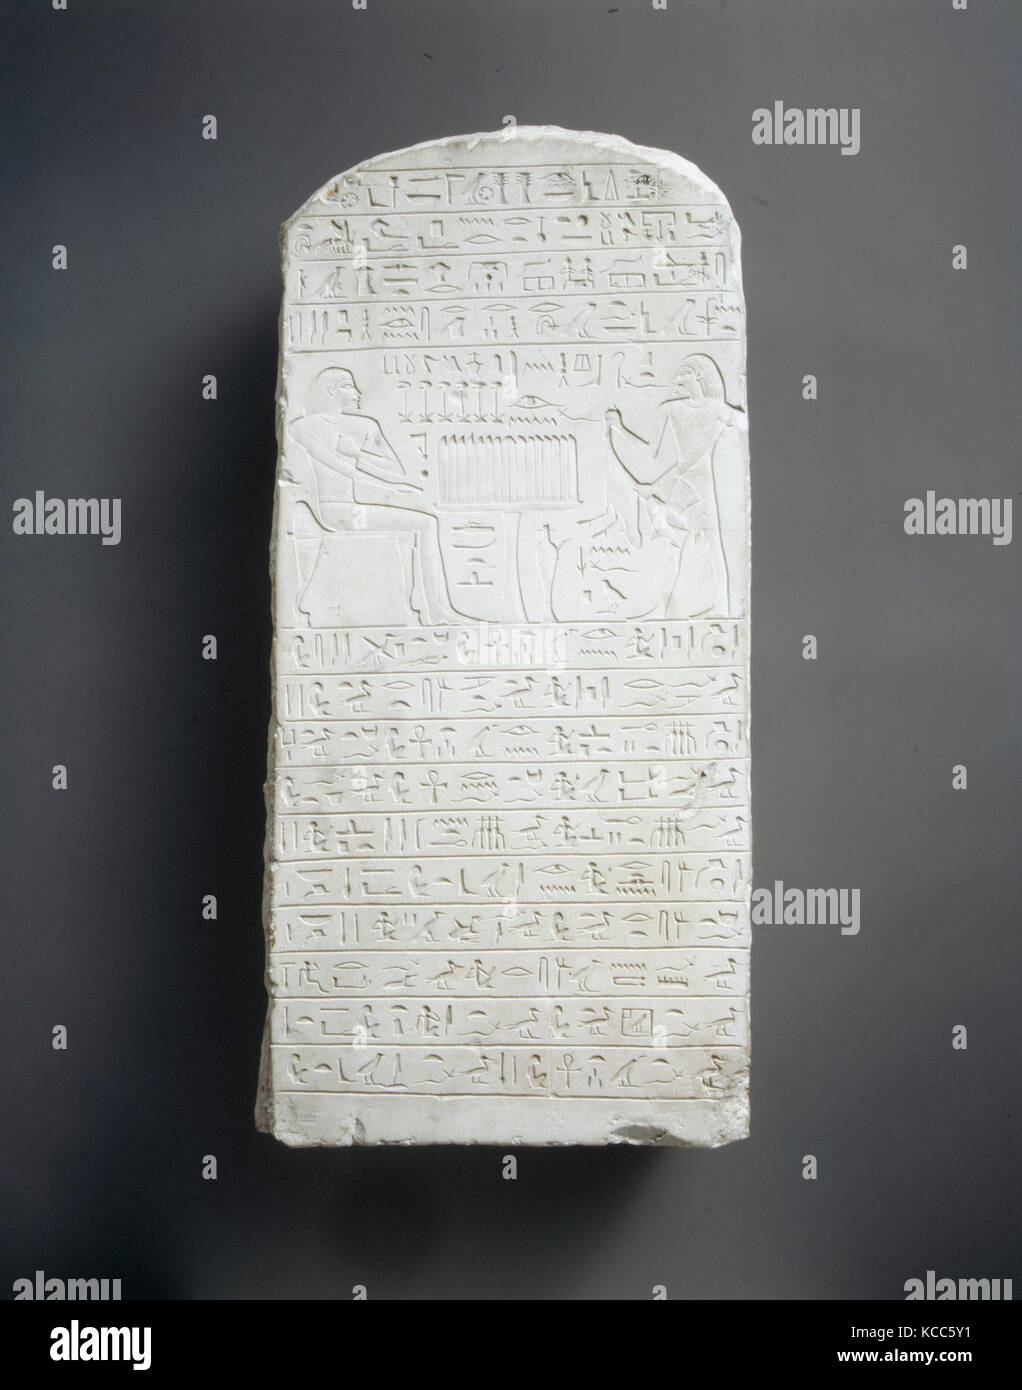 Stele von Rehuerdjersen, Reich der Mitte, Dynastie 12, Mitte, Ca. 1900 - 1850 v. Chr., aus Ägypten, Abydos, wahrscheinlich aus dem nördlichen Oberen Stockfoto